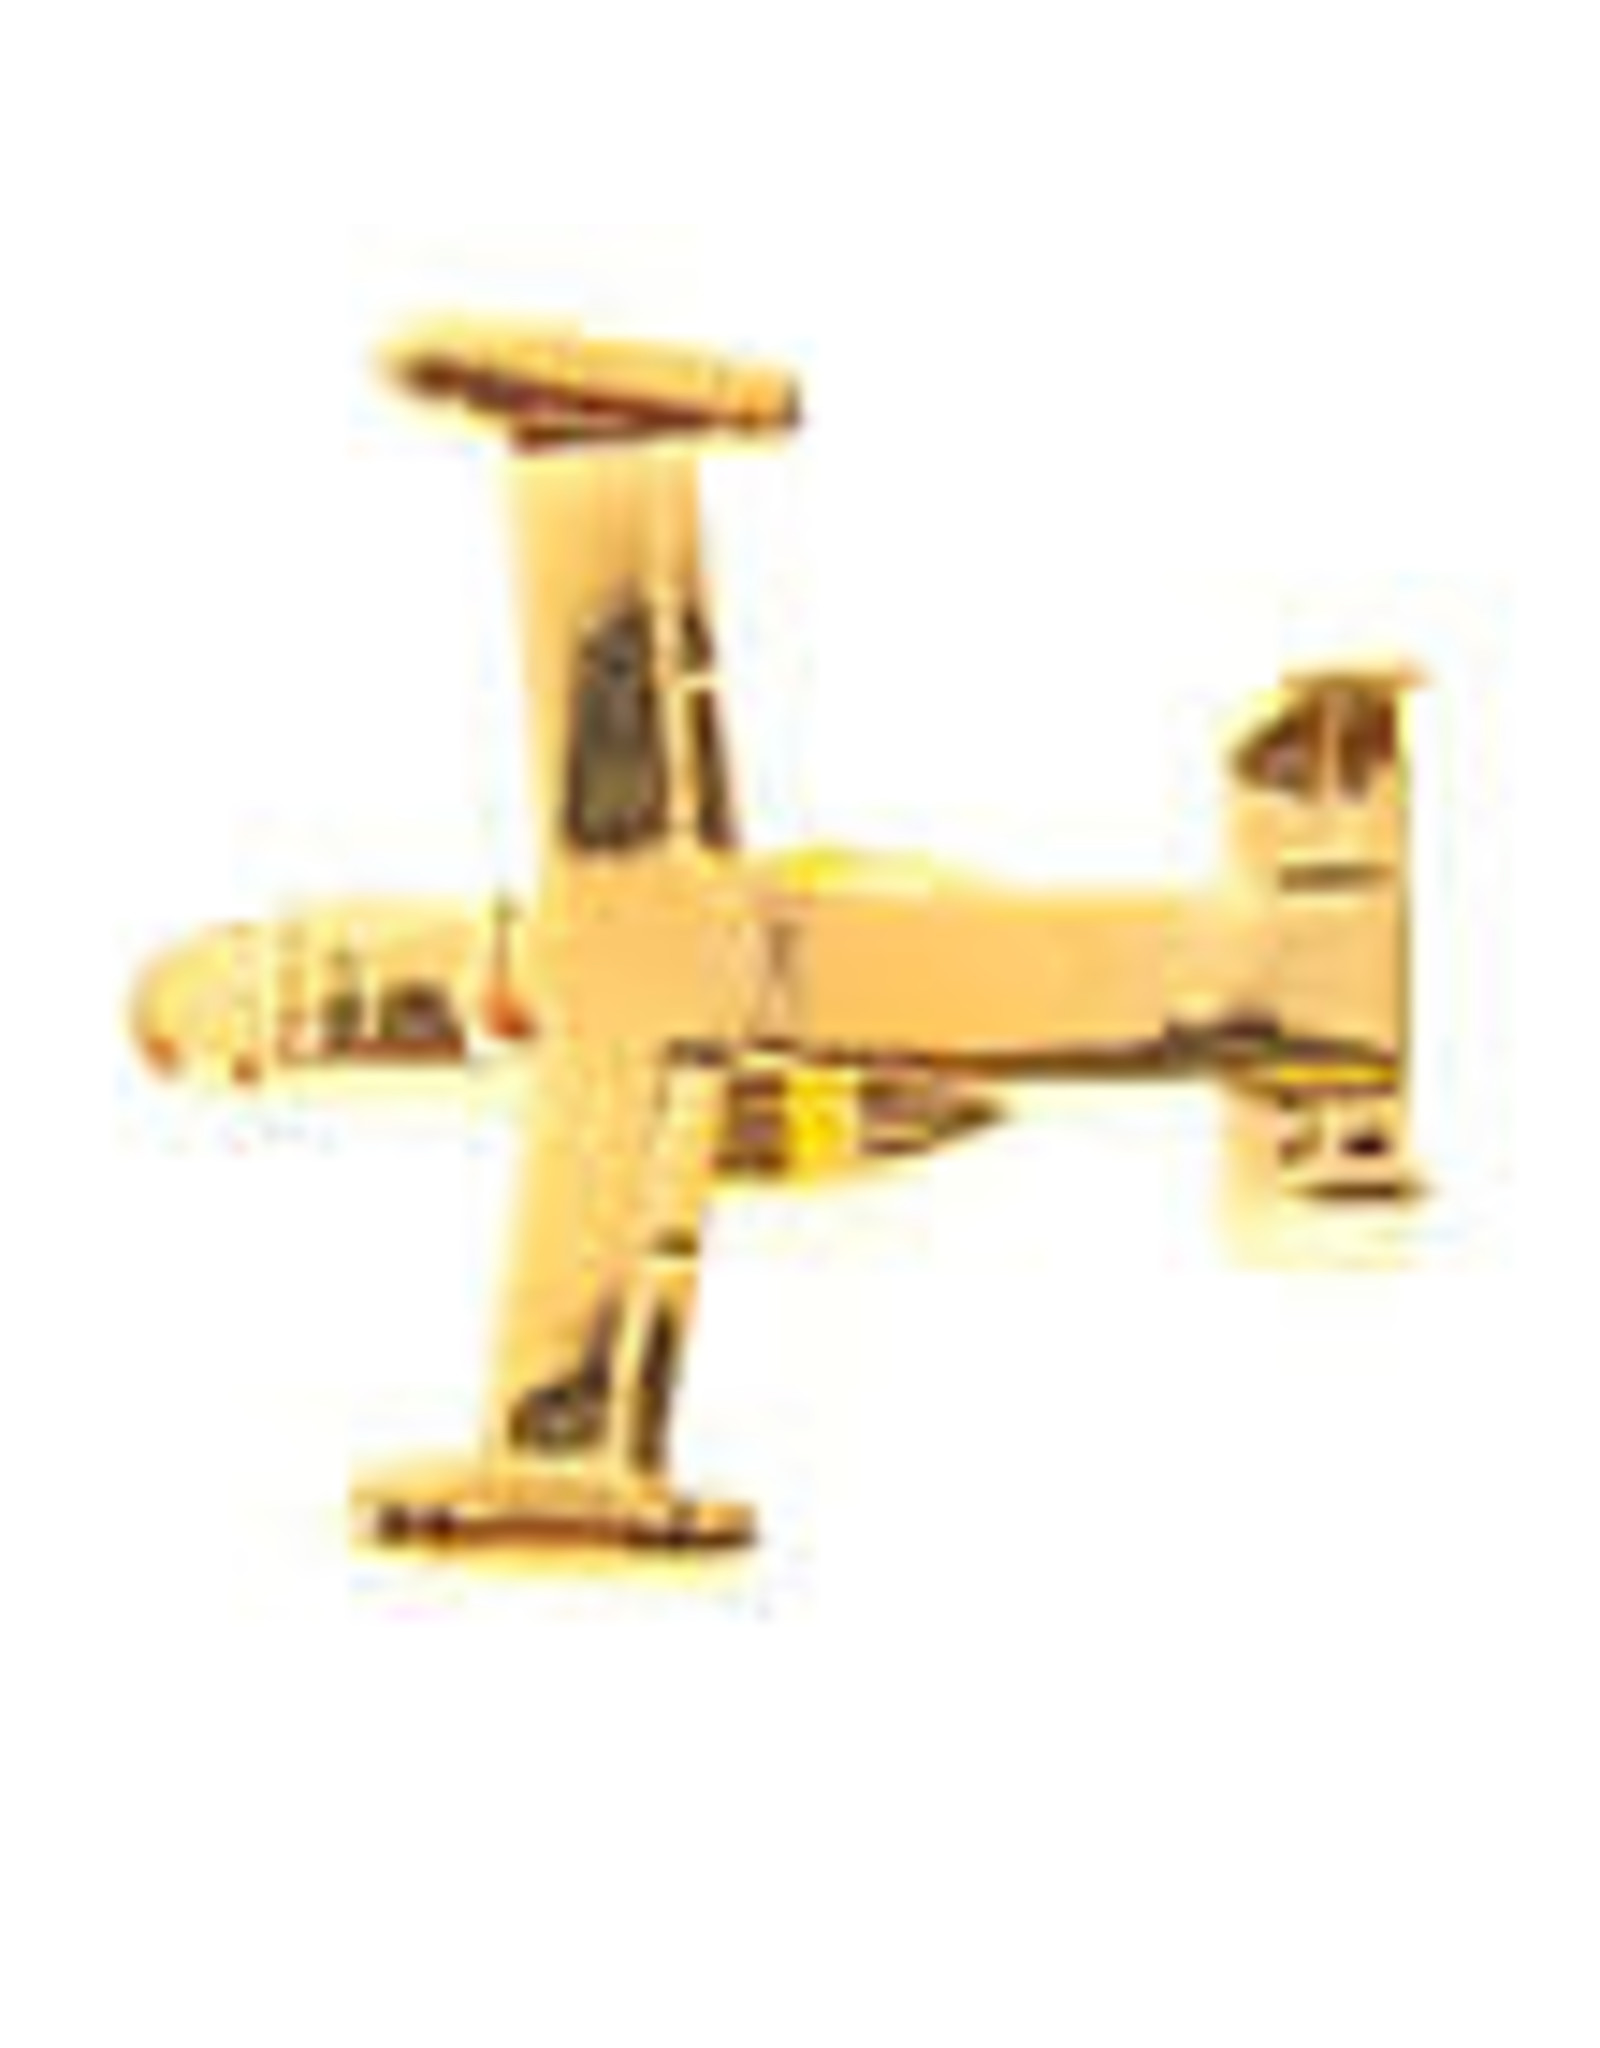 Clivedon Pin Badge V-22 Osprey, Pin, gold